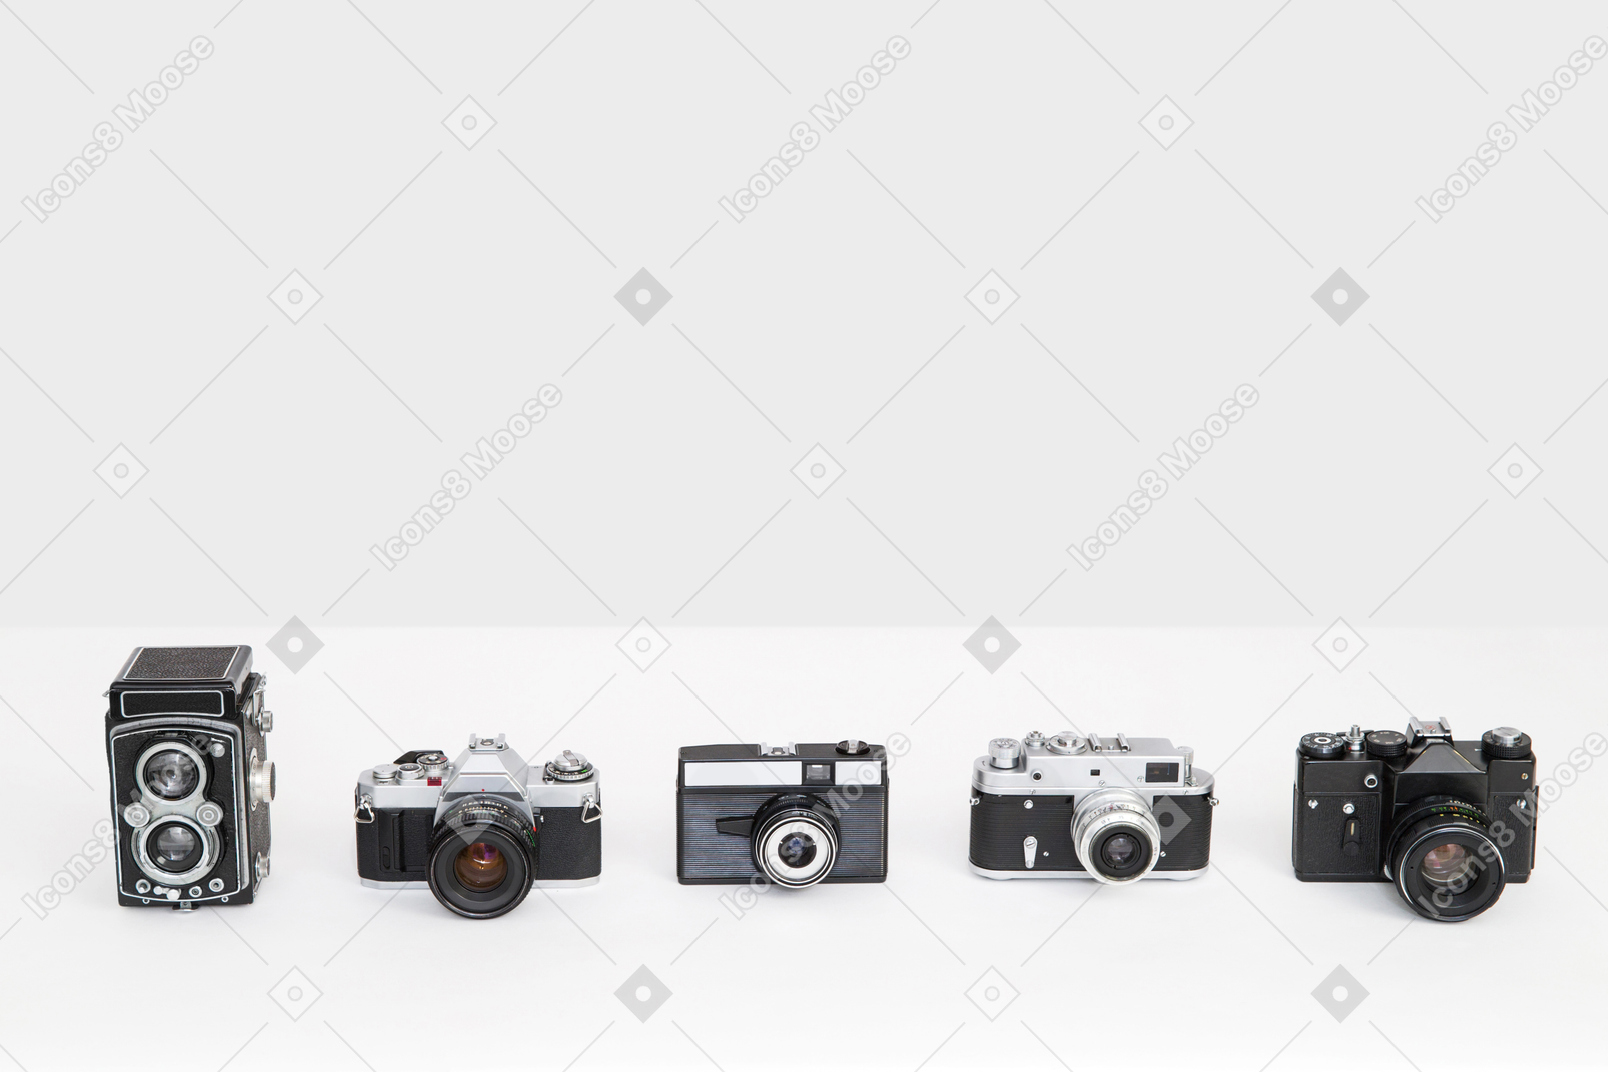 Five retro cameras